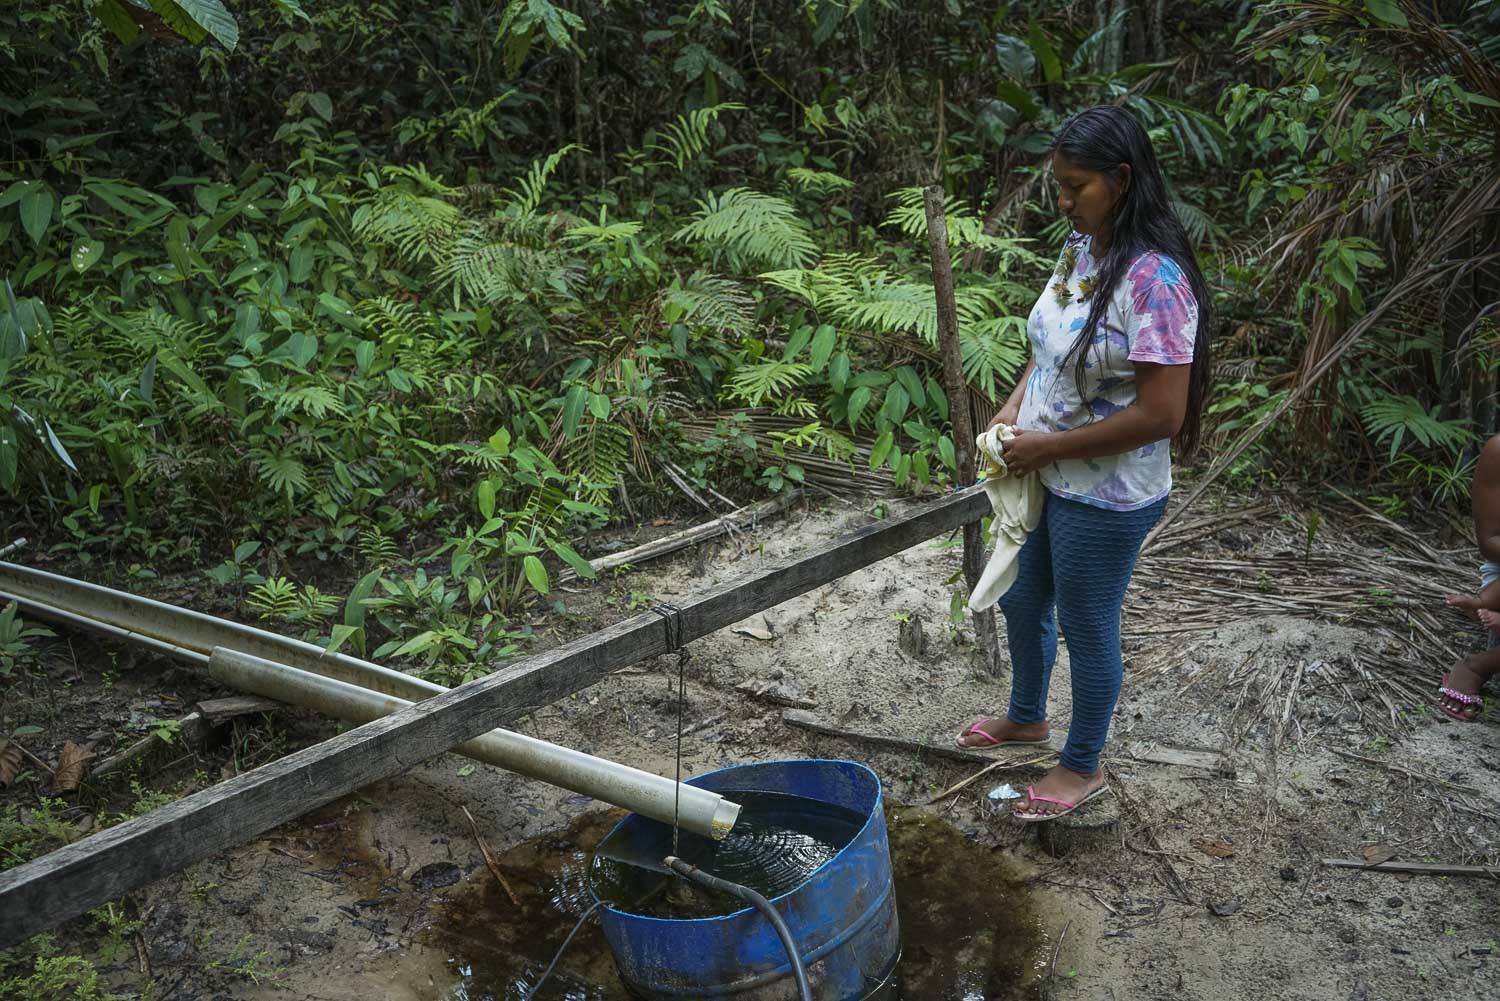 Moradora da aldeia de Branquinho, em Manaus, observa um dos únicos poços ainda com água potável nas redondezas. A seca causa transtornos e isola comunidades ribeirinhas. Foto Juliana Pesqueira / Amazônia Real, CC BY-NC-ND